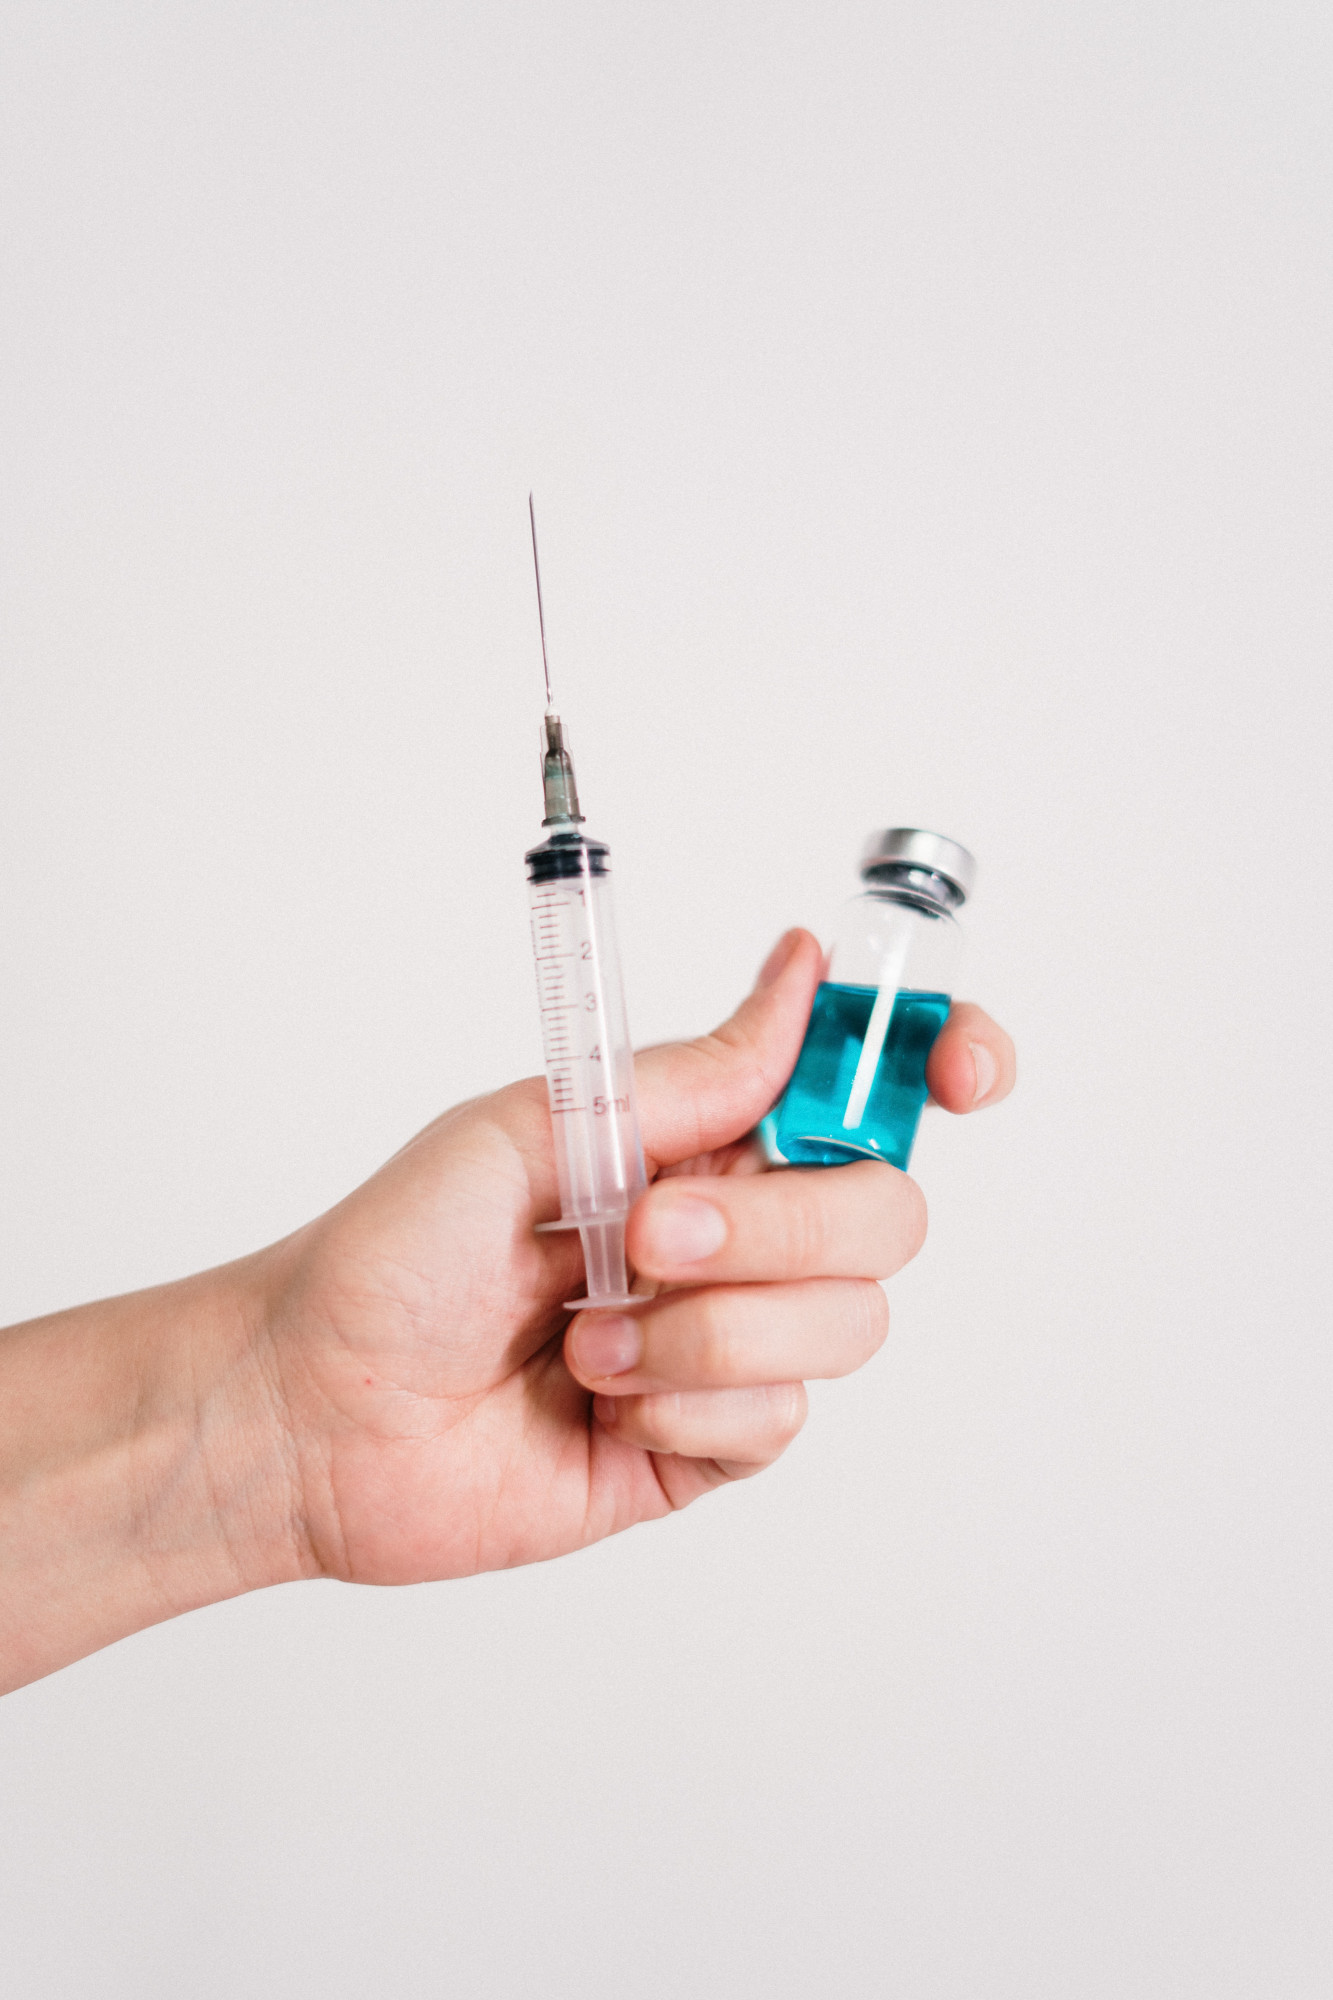 Impfstoff und Spritze